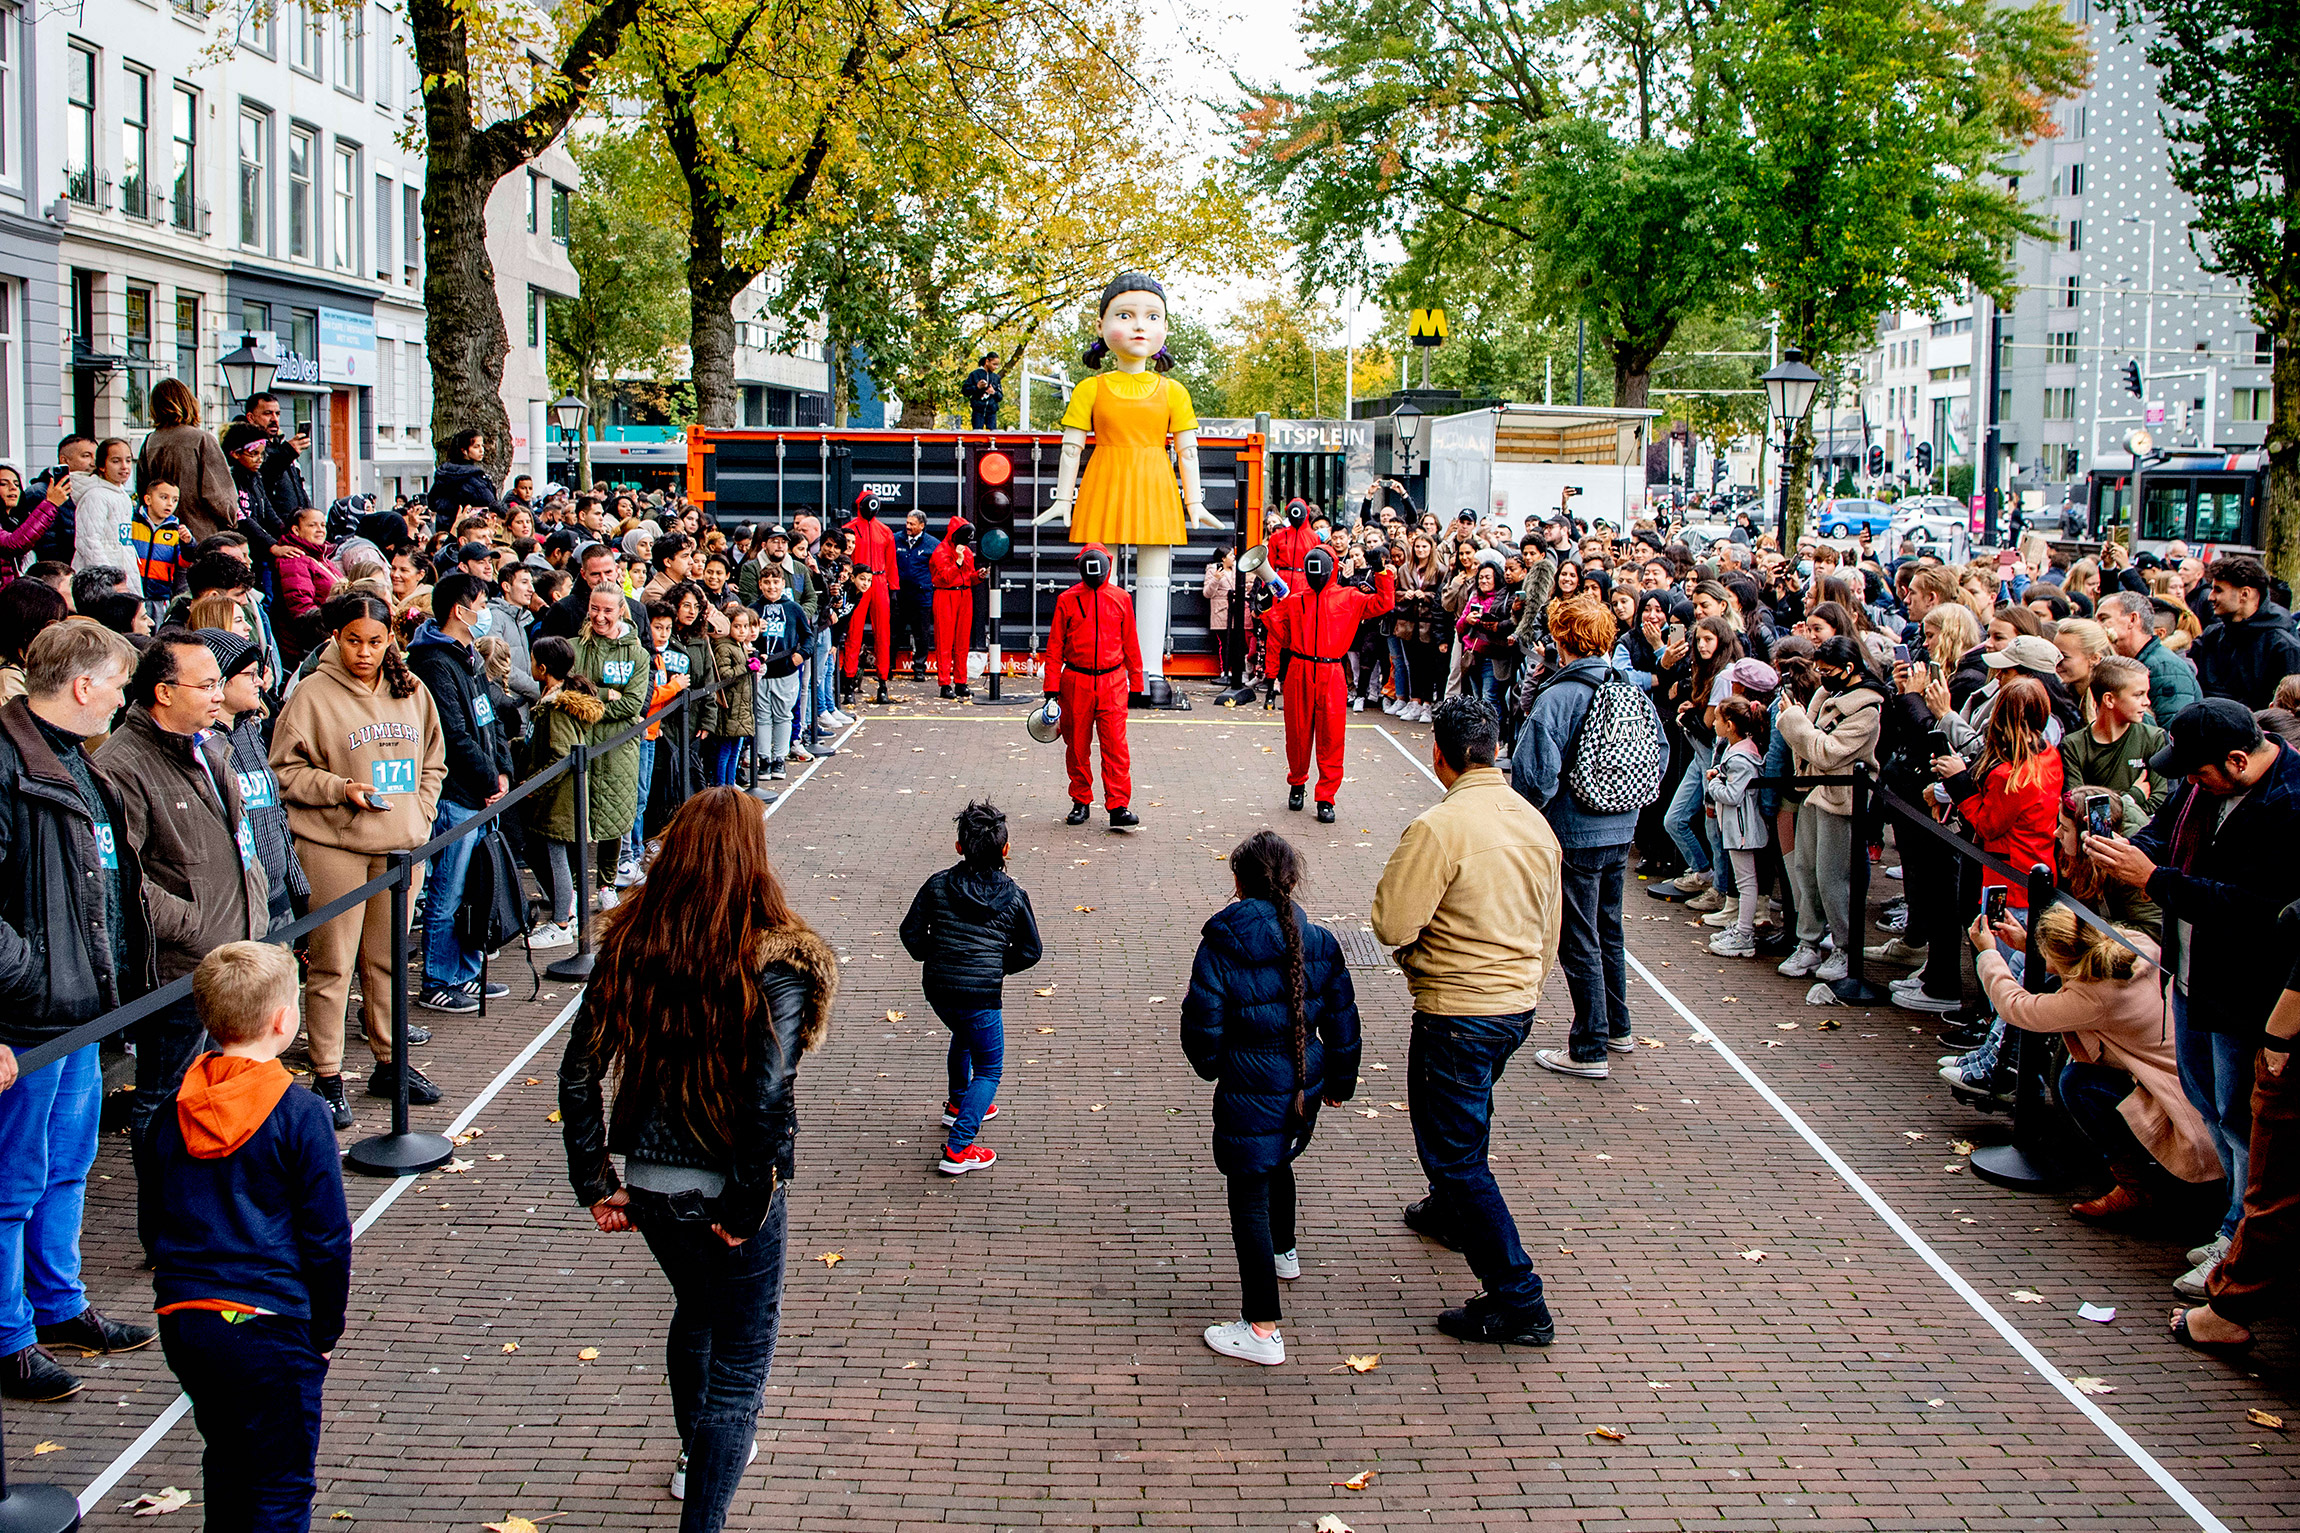 17 октября, Роттердам (Нидерланды), участники игры &laquo;тише едешь&nbsp;&mdash; дальше будешь&raquo;. Победитель получил зеленый тренировочный костюм, как в сериале, а проигравшие&nbsp;&mdash; печенье с молоком